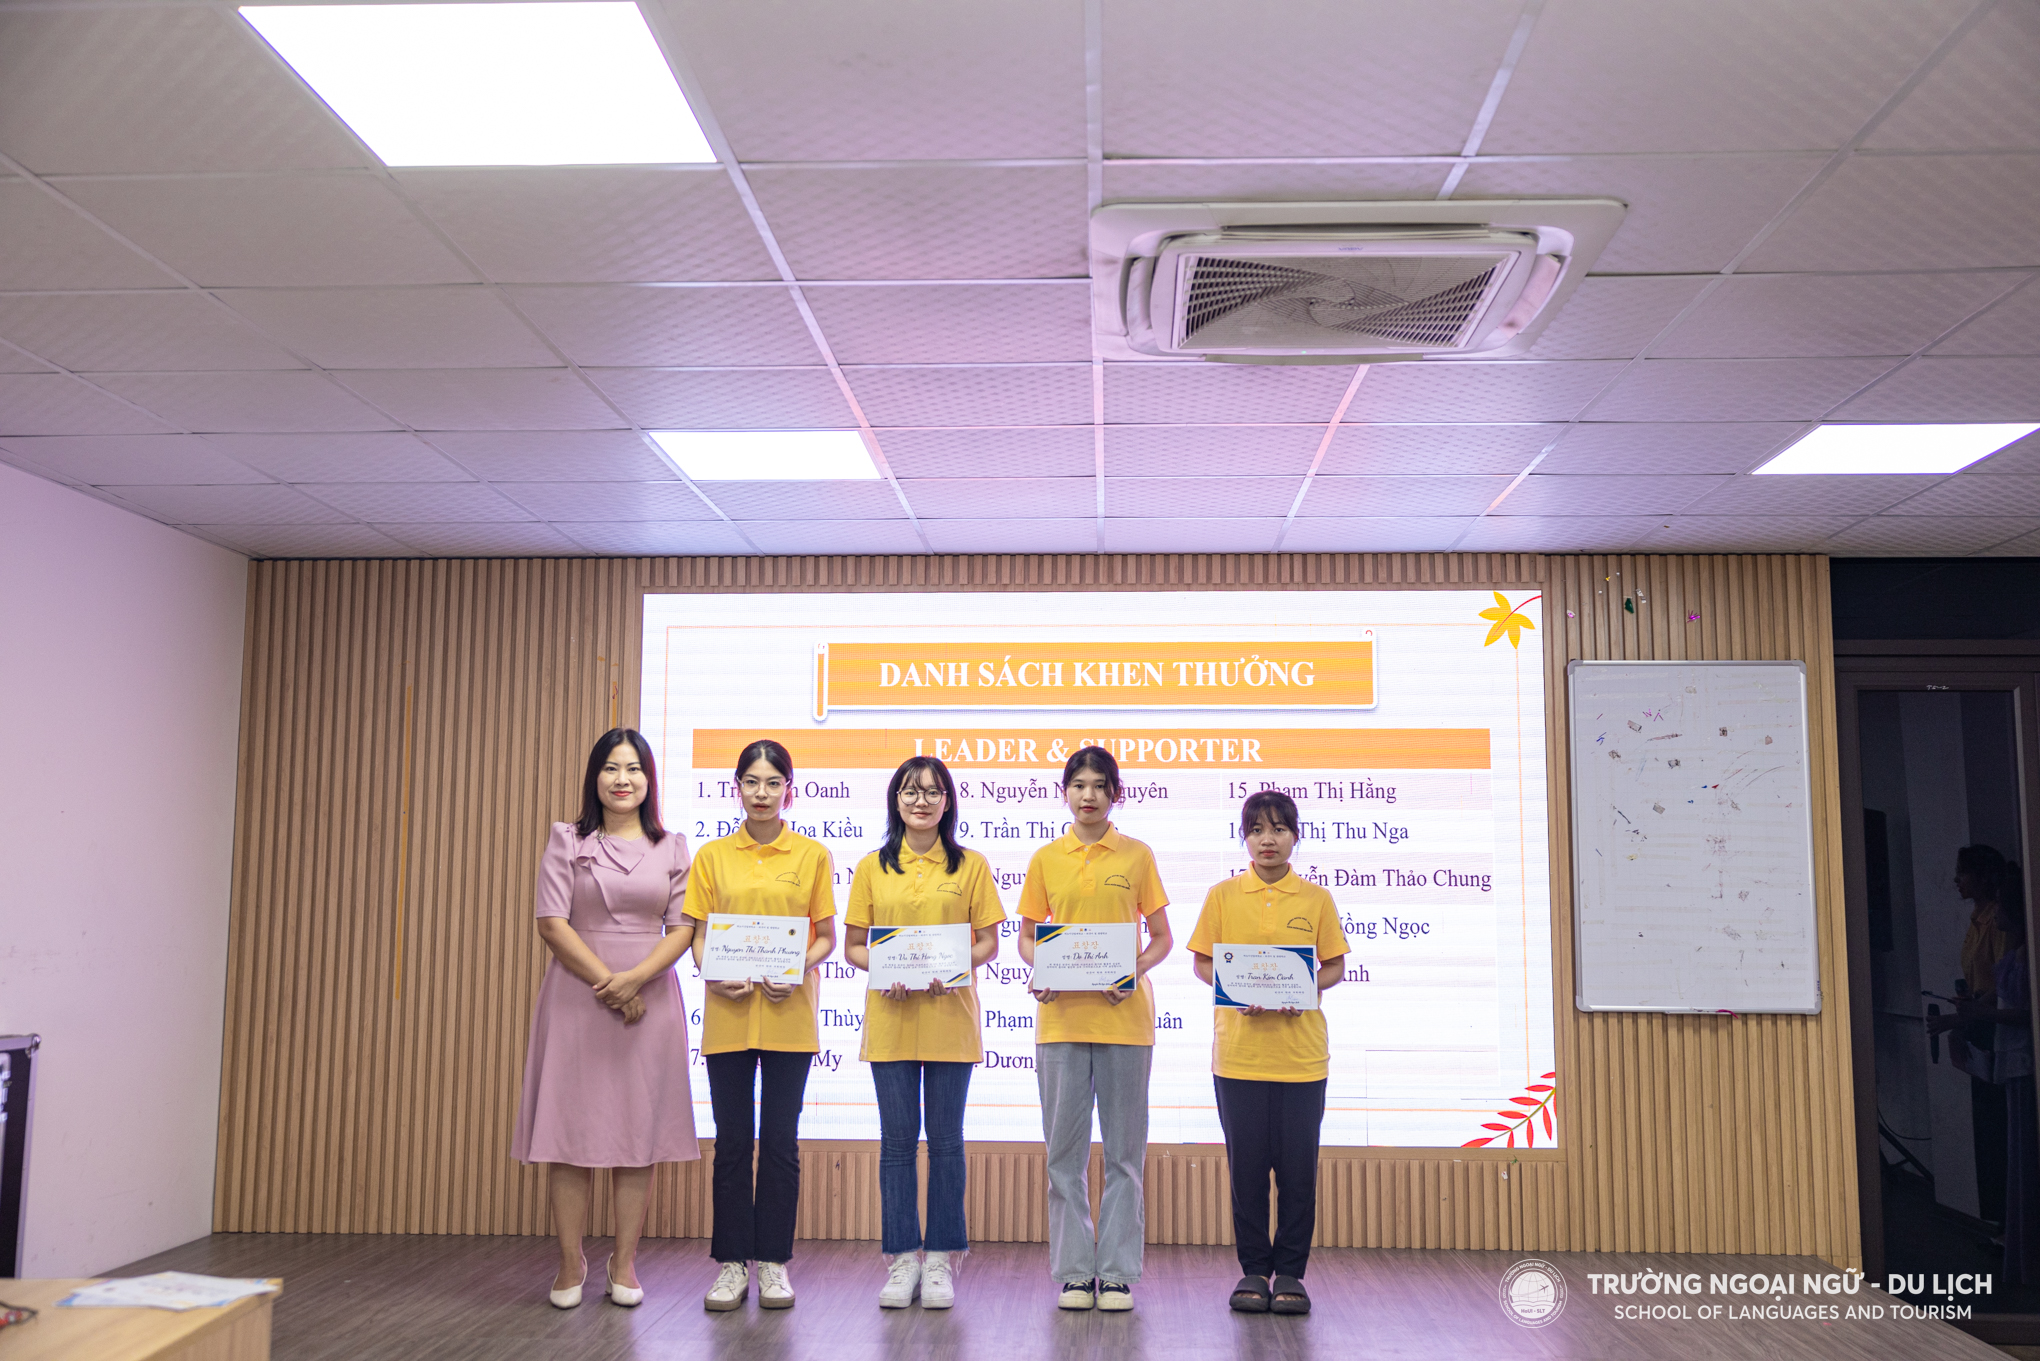 Hội nghị hiệp thương Câu lạc bộ tiếng Hàn Quốc K4U Trường Ngoại Ngữ - Du Lịch